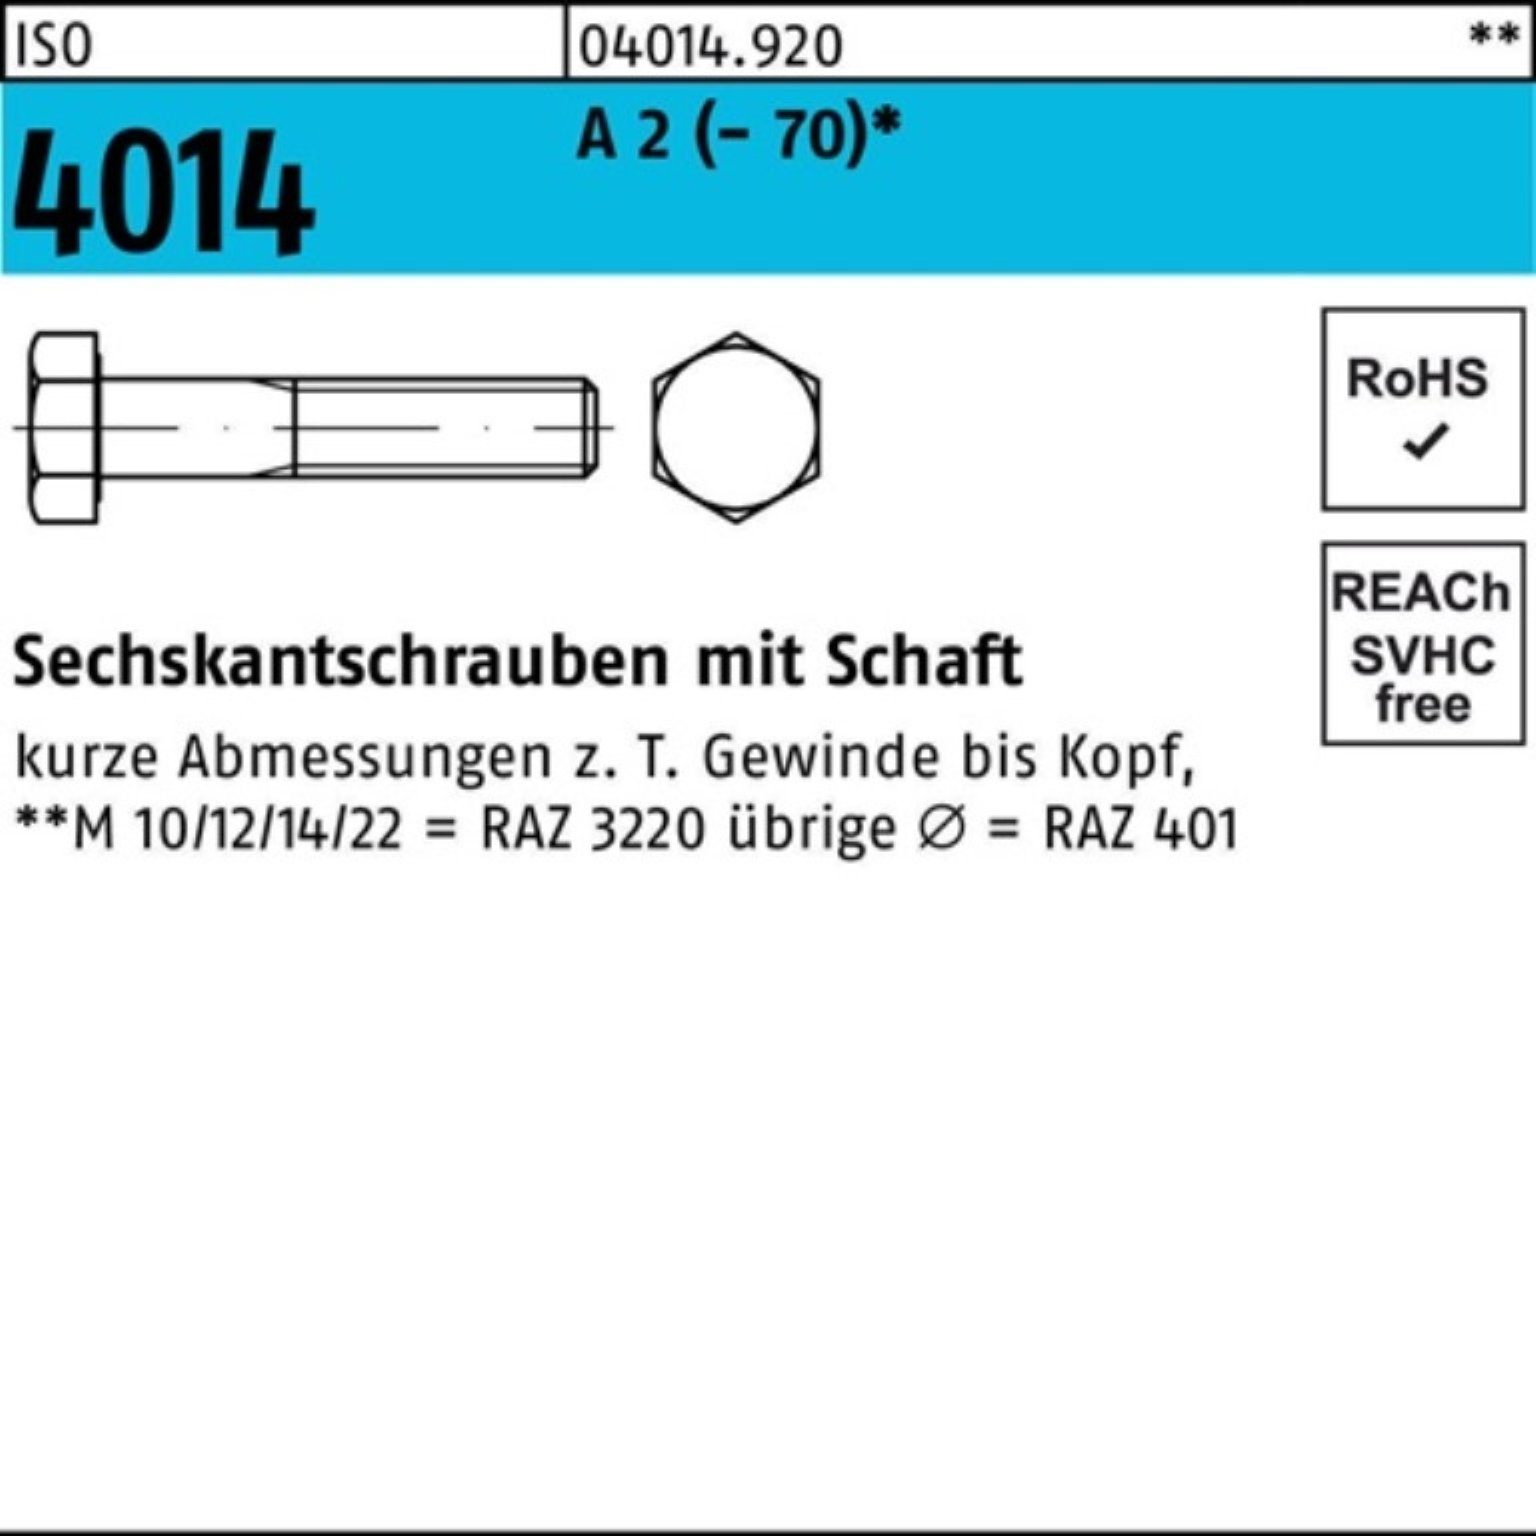 ISO Sechskantschraube Schaft M30x 2 4014 100 Stück 1 100er Bufab Sechskantschraube Pack A ISO